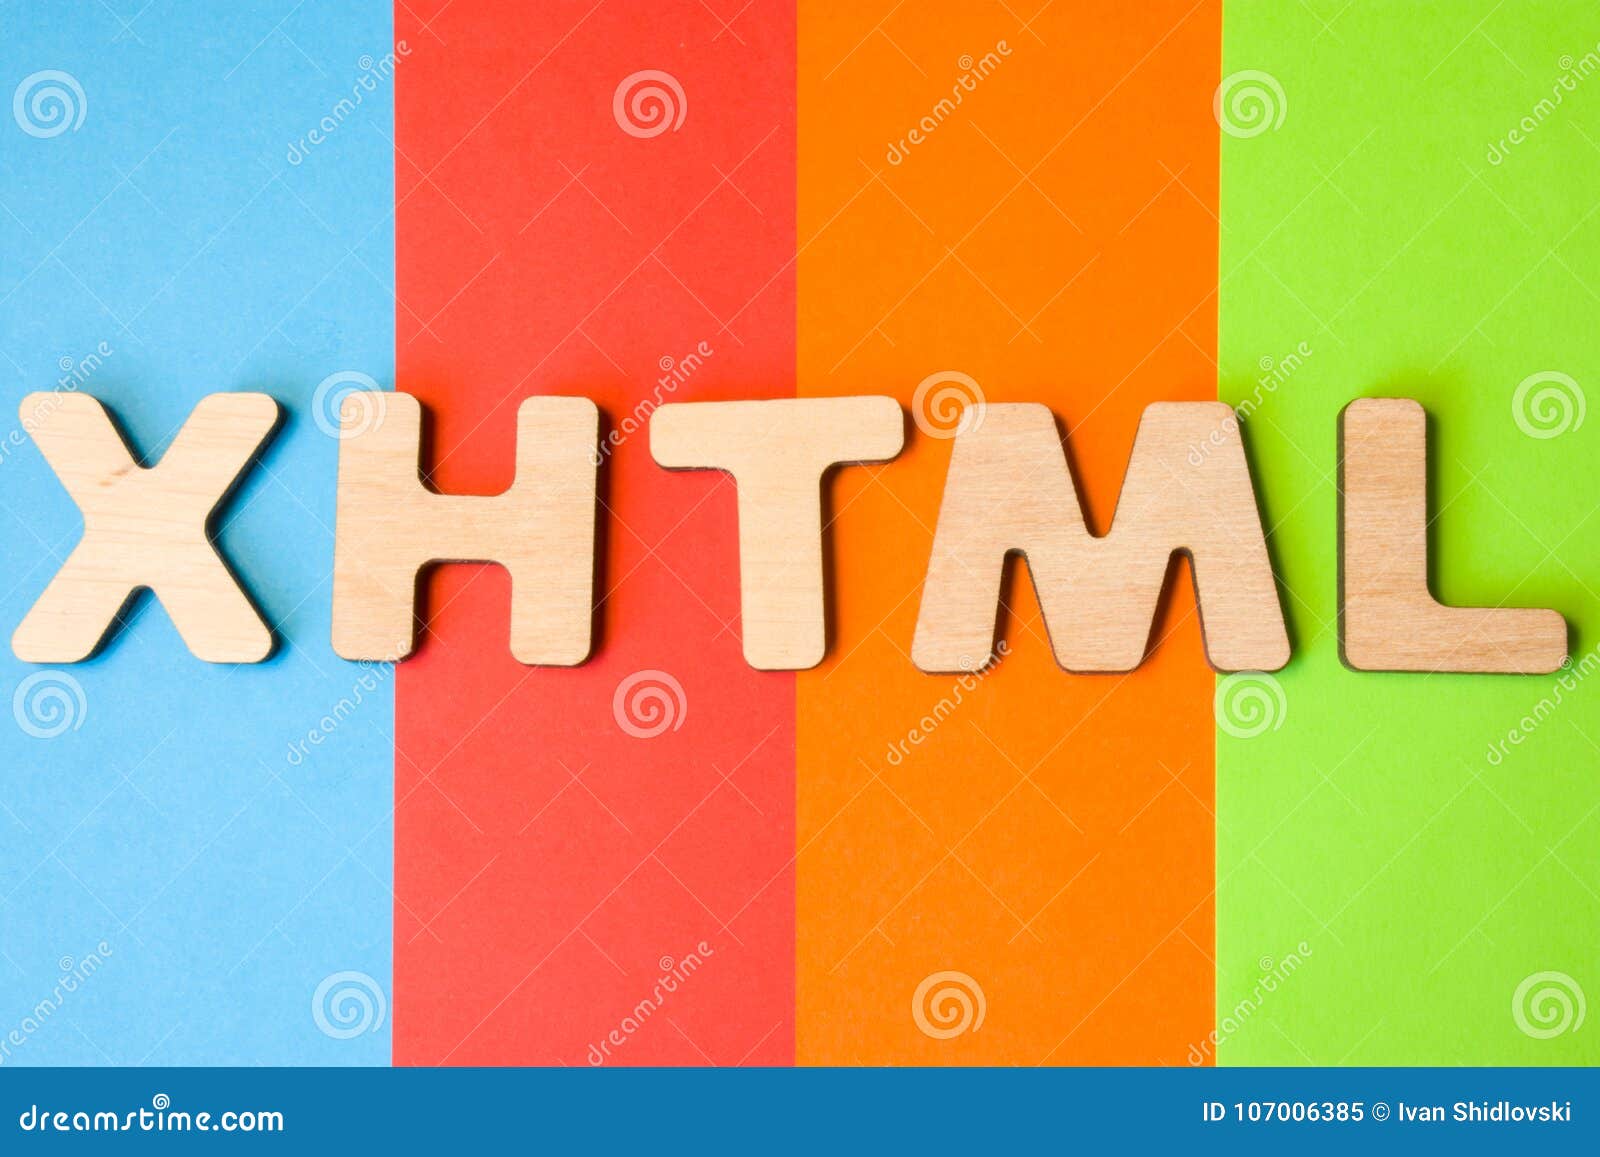 Nếu bạn đang tìm hiểu về XHTML hoặc viết tắt, ý nghĩa Đánh dấu siêu văn bản mở rộng, hãy xem hình ảnh mà chúng tôi chia sẻ. Bạn sẽ nhận được nhiều thông tin hữu ích và cập nhật về xu hướng công nghệ mới.